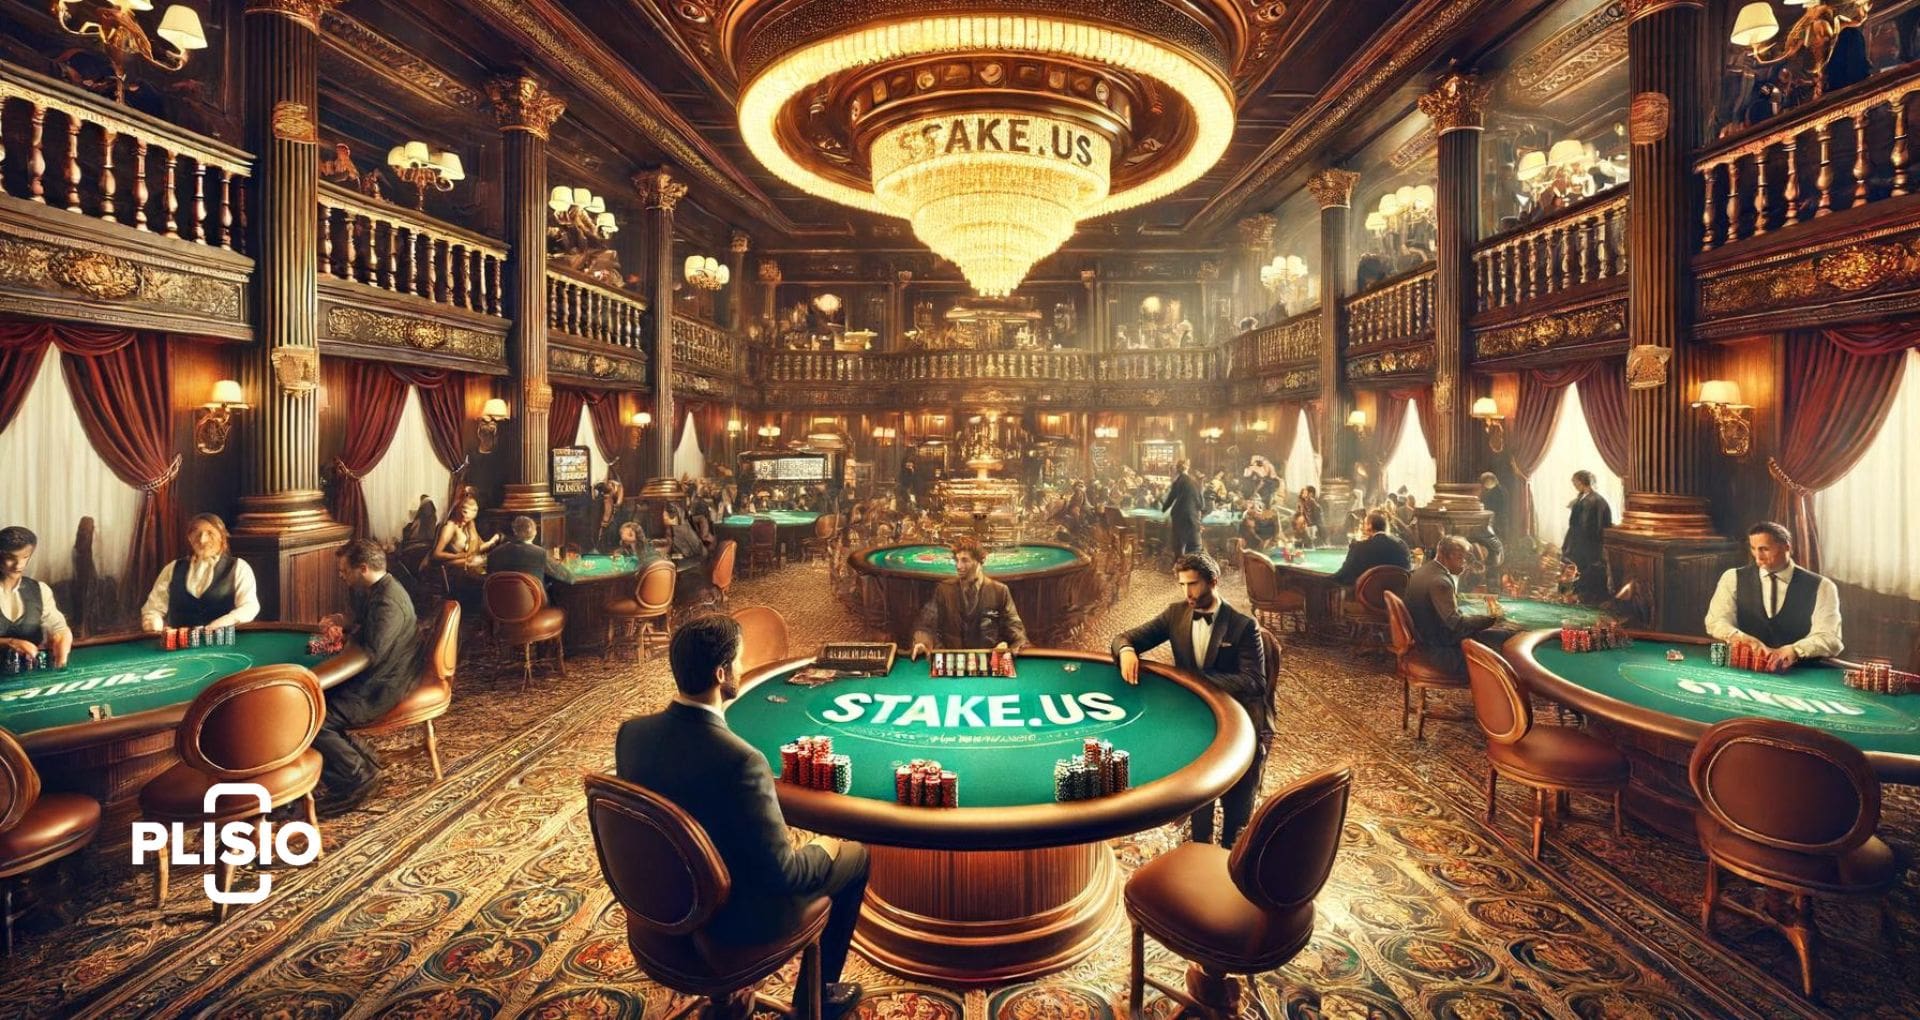 Revisión del casino Stake.us: ¿Son legales?